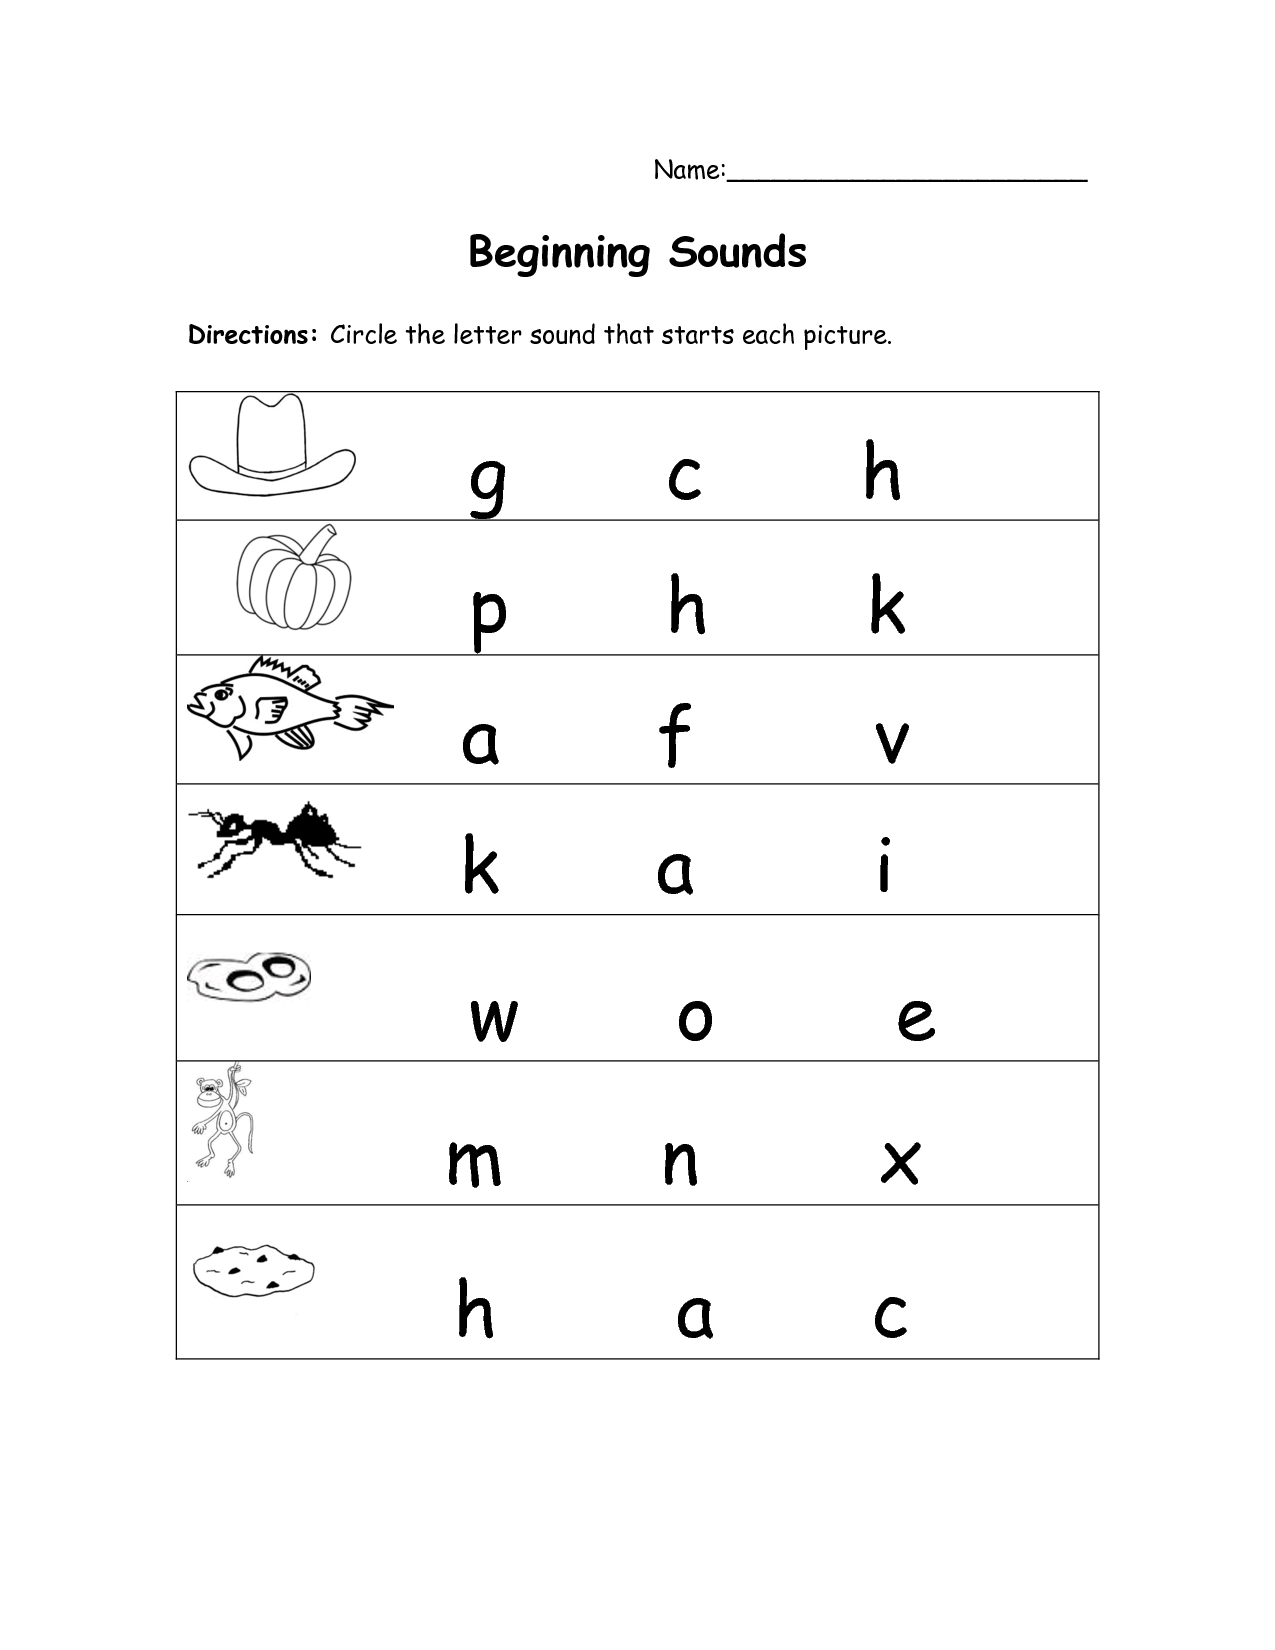 11 Best Images of Beginning Sound Worksheet O - Beginning Letter Sounds